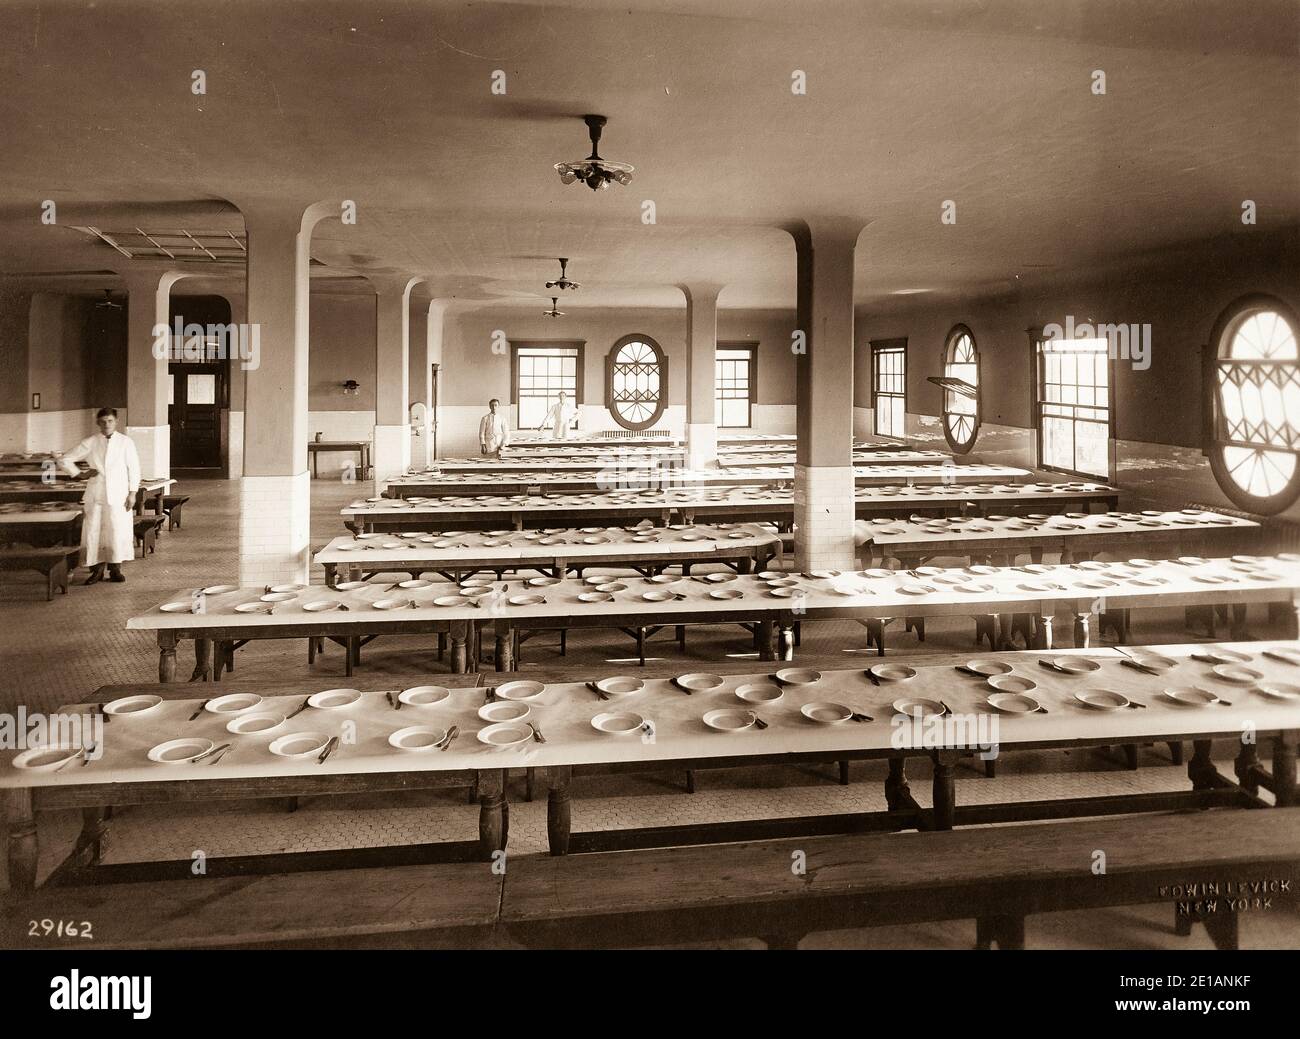 Ellis Island - nel 19 ° secolo, Ellis Island era il sito di Fort Gibson e più tardi divenne una rivista navale. La prima stazione di ispezione è stata aperta nel 1892 e distrutta da un incendio nel 1897. La seconda stazione è stata inaugurata nel 1900 e ospitava strutture per le quarantene mediche e per i lavoratori immigrati. Dopo il 1924, Ellis Island fu utilizzata principalmente come centro di detenzione per i migranti. Sia durante la prima guerra mondiale che durante la seconda guerra mondiale le sue strutture furono utilizzate anche dall'esercito degli Stati Uniti per detenere prigionieri di guerra. Foto Stock